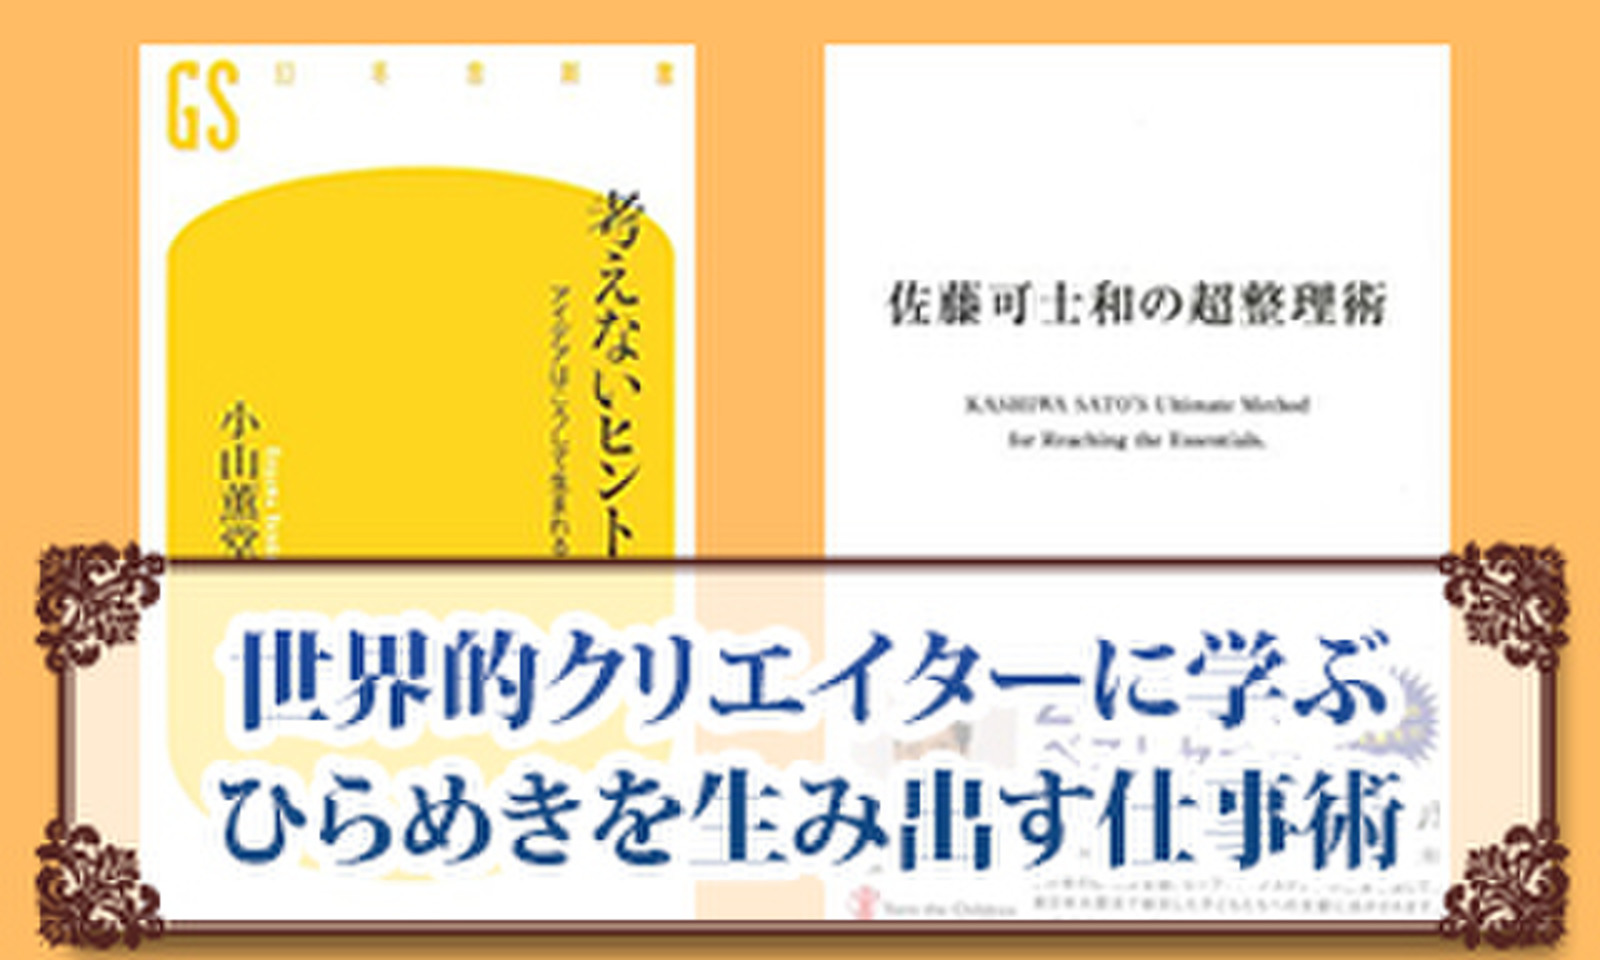 世界的クリエイターに学ぶ ひらめきを生み出す仕事術 日本最大級のオーディオブック配信サービス Audiobook Jp